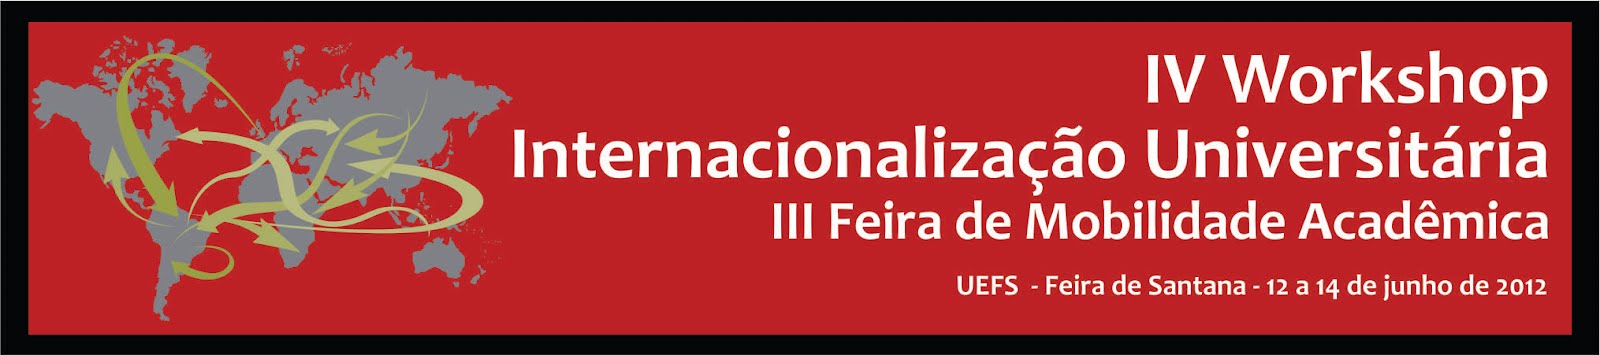 IV Workshop Internacionalização Universitária